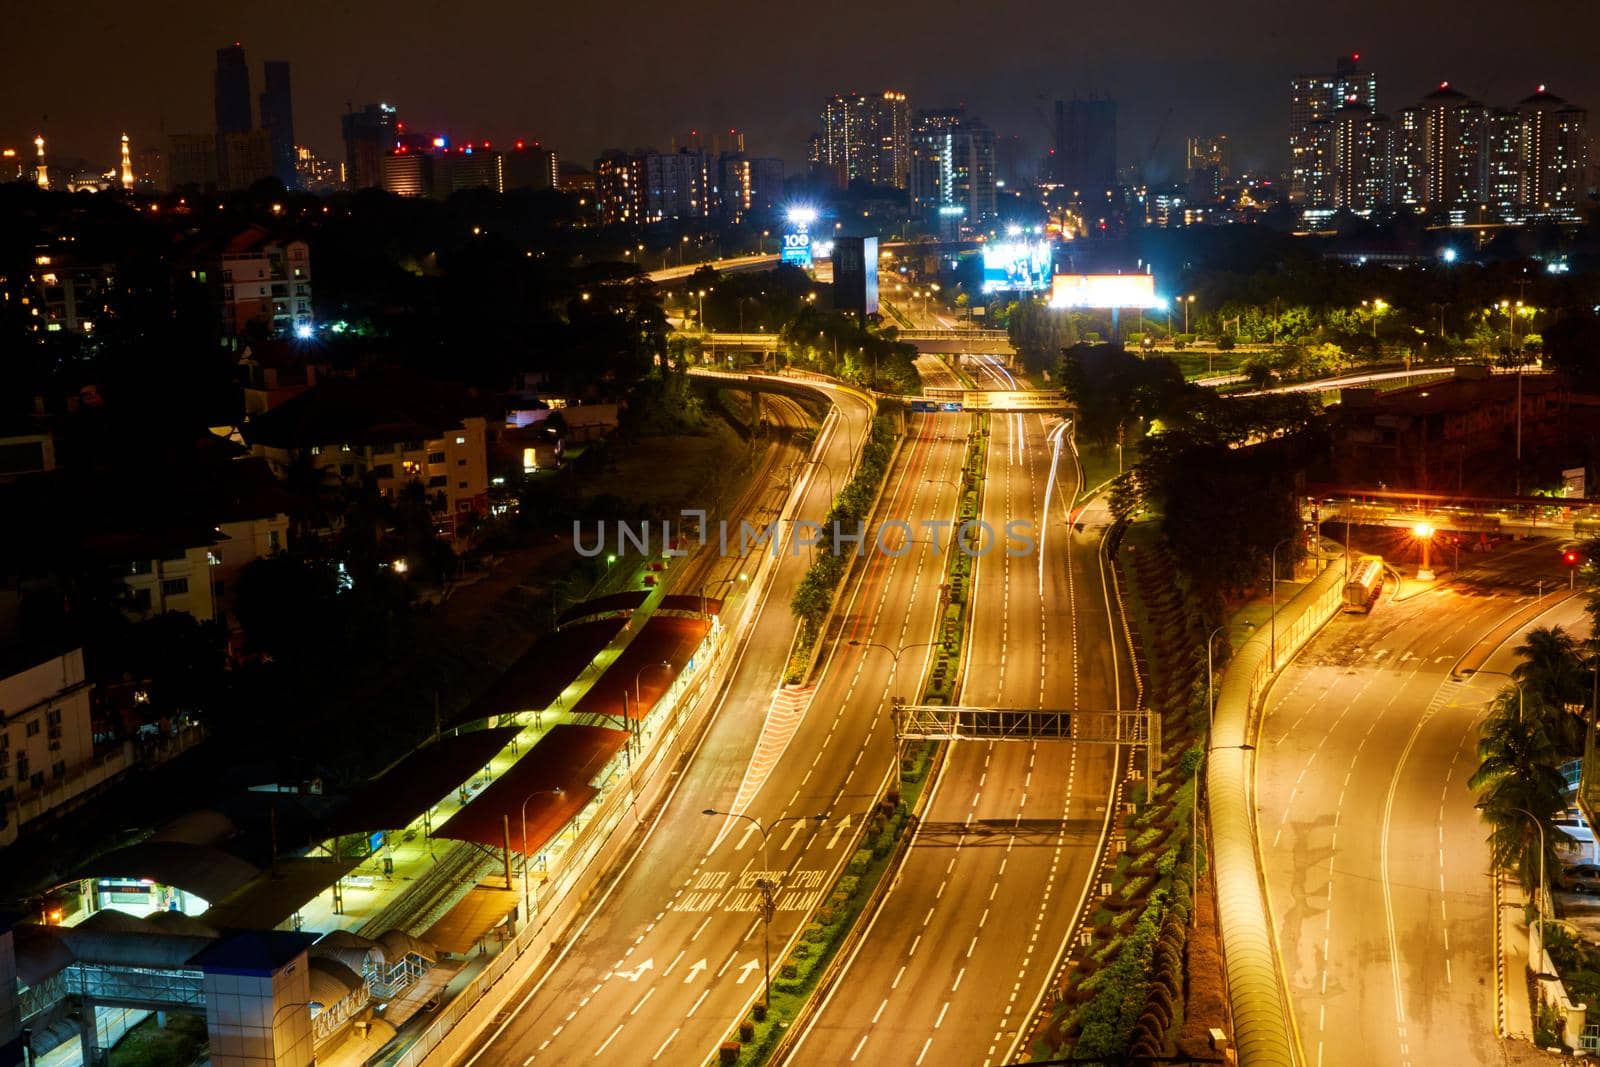 Multi-lane highway in the direction of the metropolis. Night view. Kuala Lumpur, Malaysia - 04.01.2020